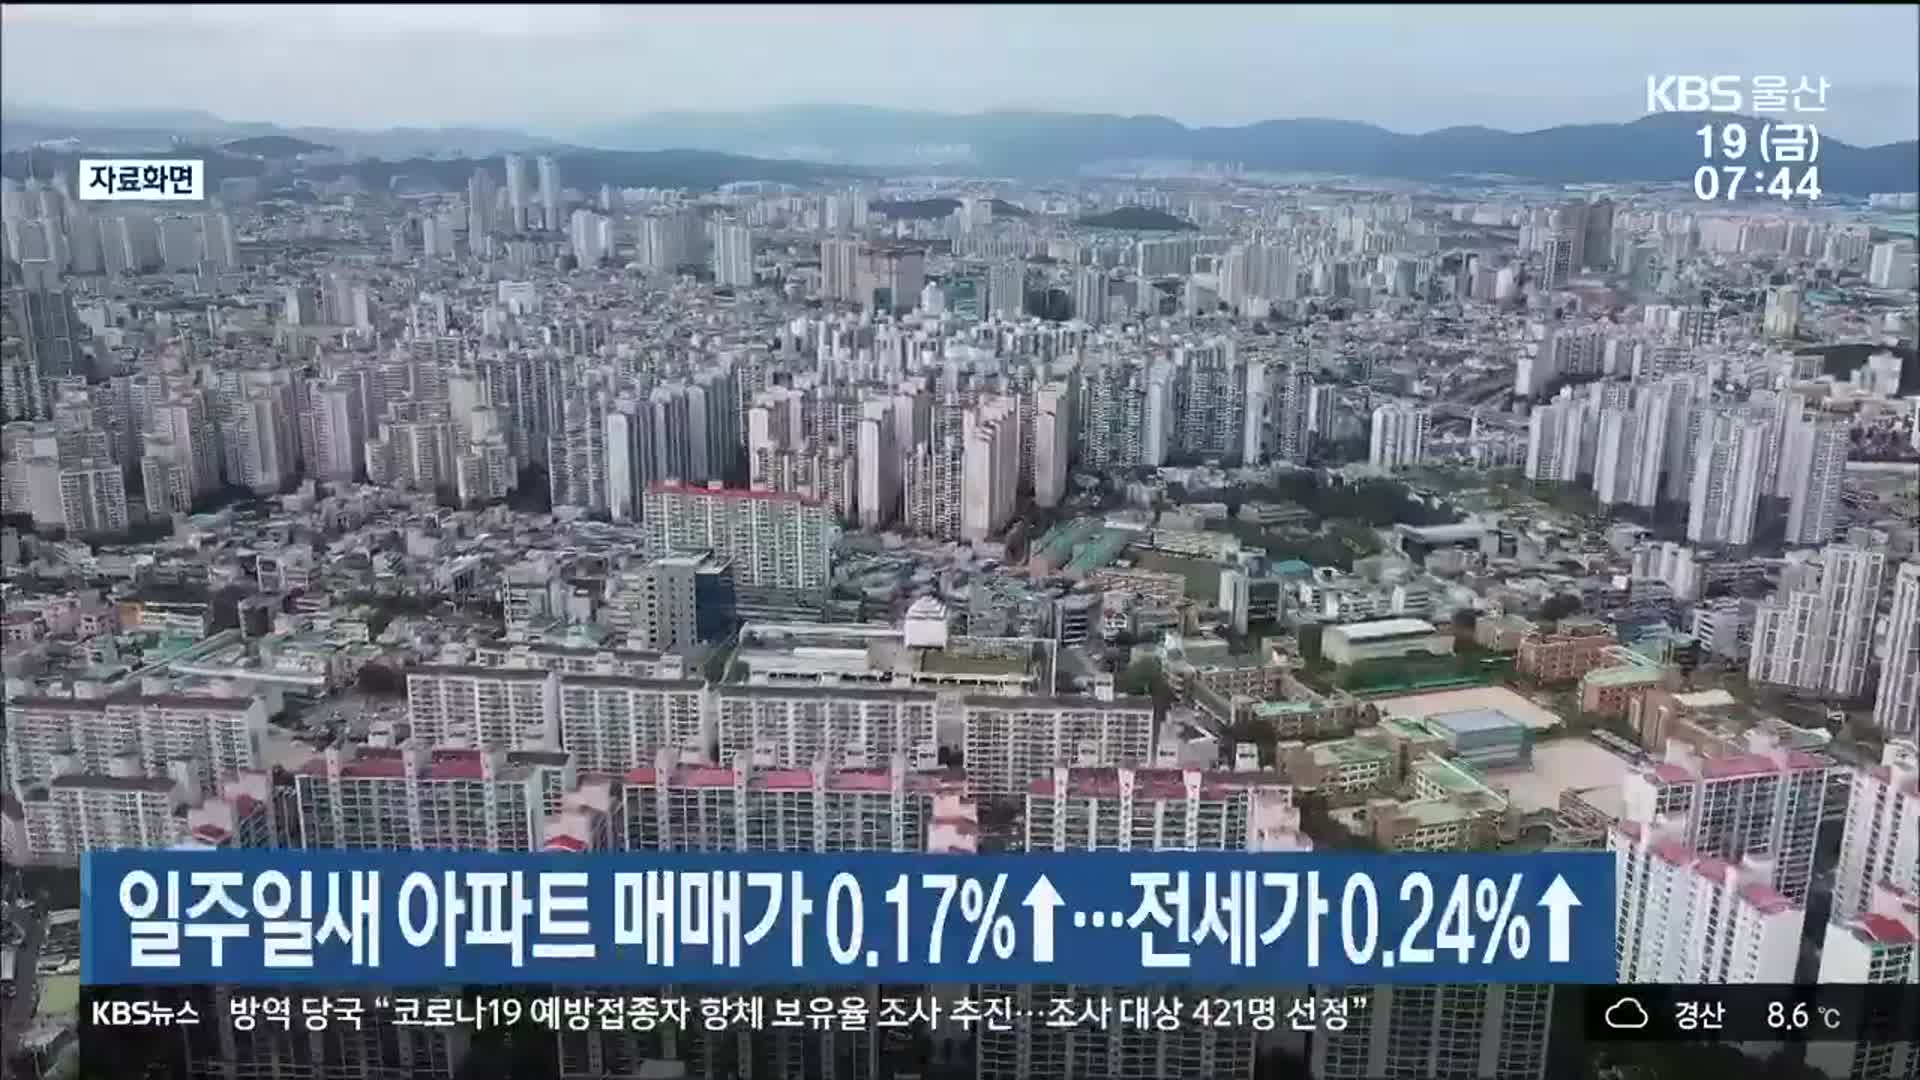 일주일새 울산 아파트 매매가 0.17%↑…전세가 0.24%↑